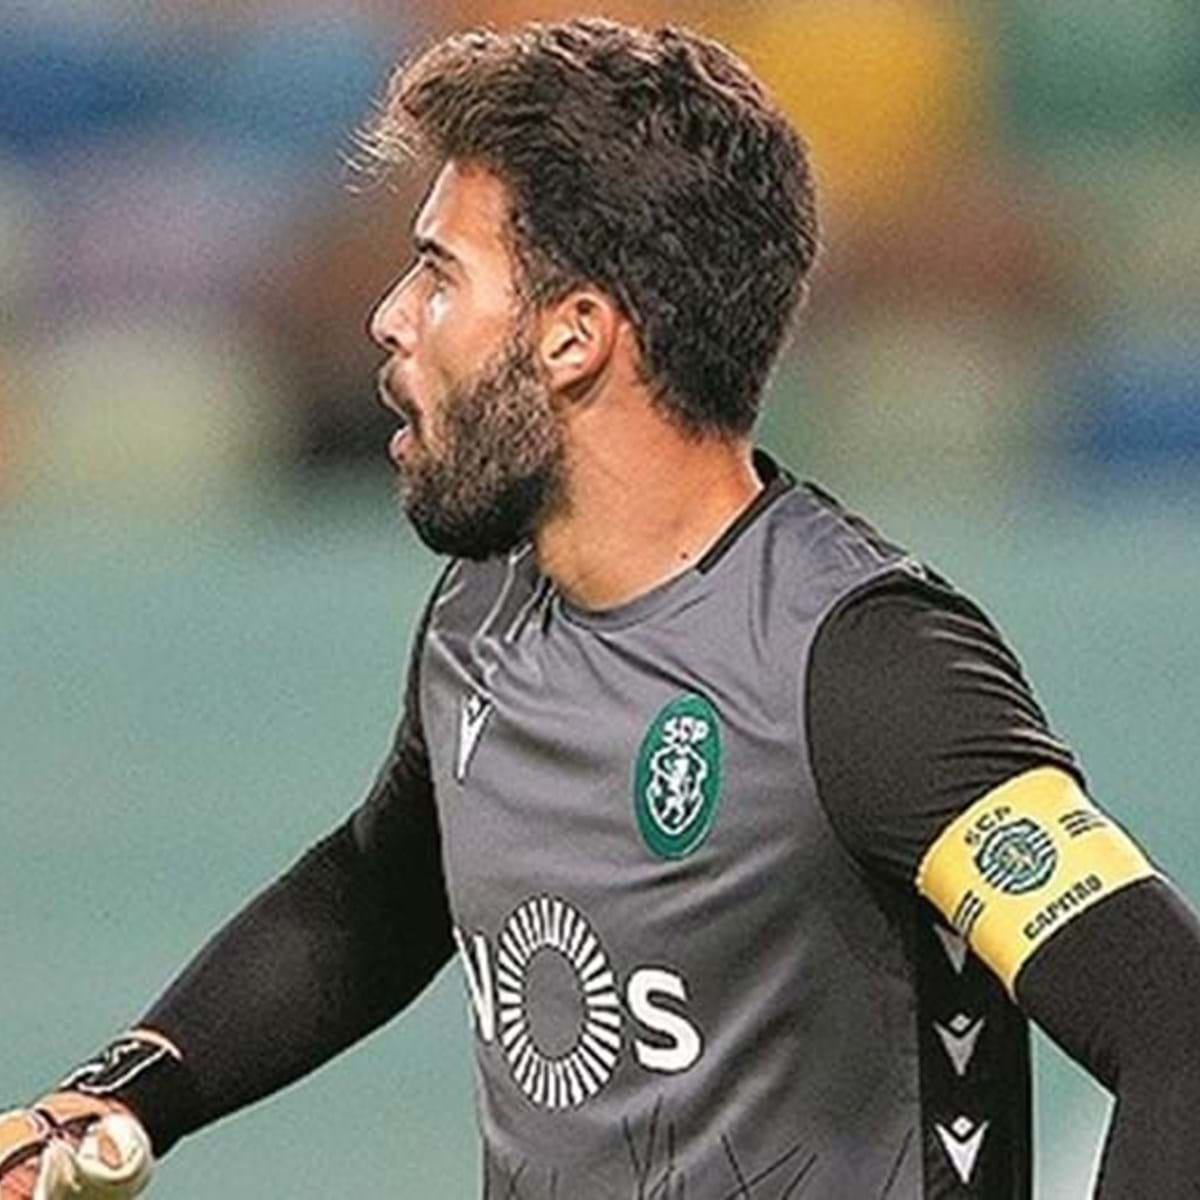 Adán revela qual o jogador que lhe deu mais problemas na hora de defender  remates - Sporting - Jornal Record